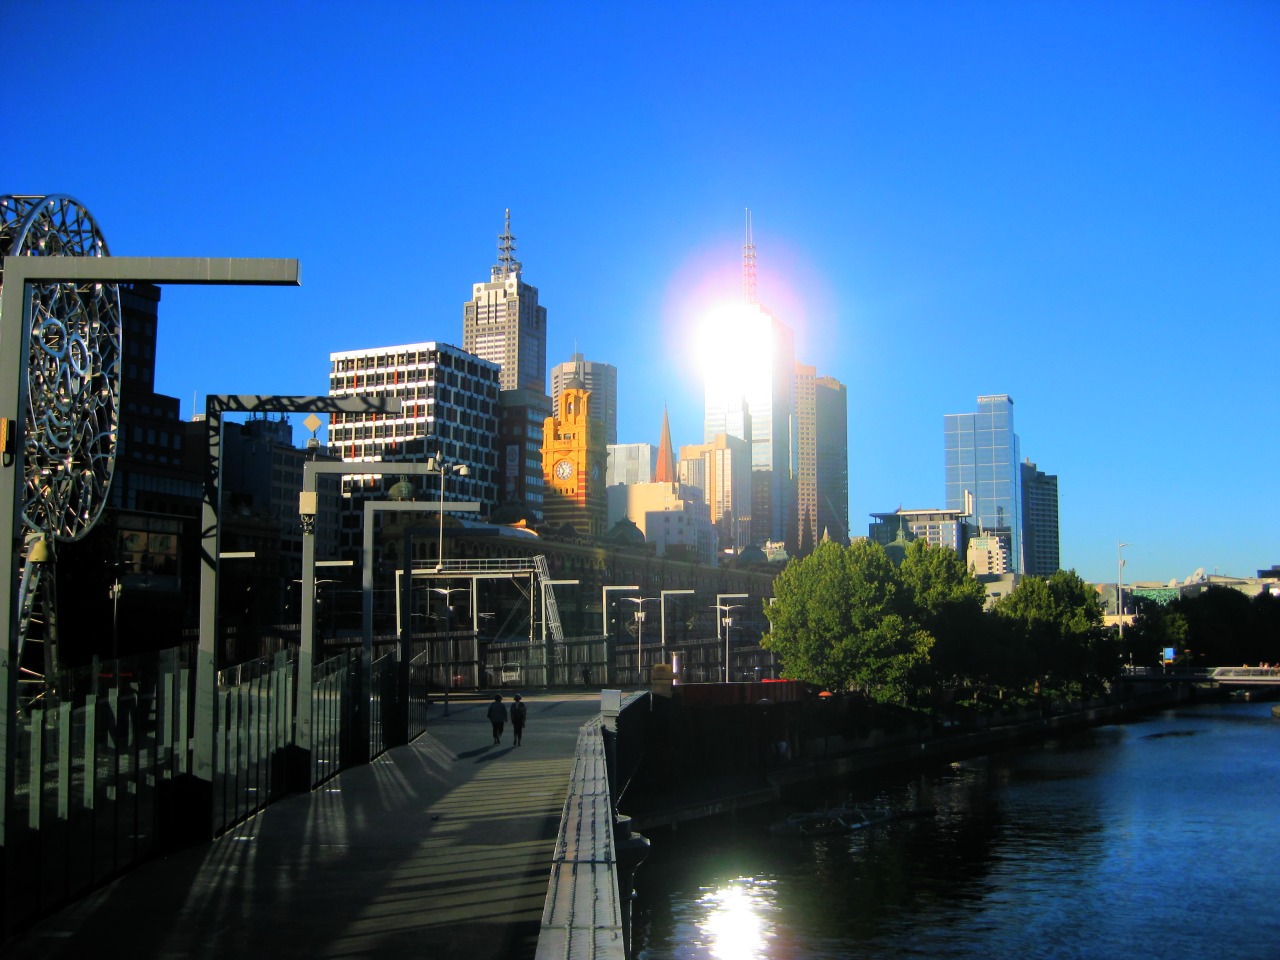 Melbourne Central Image 5